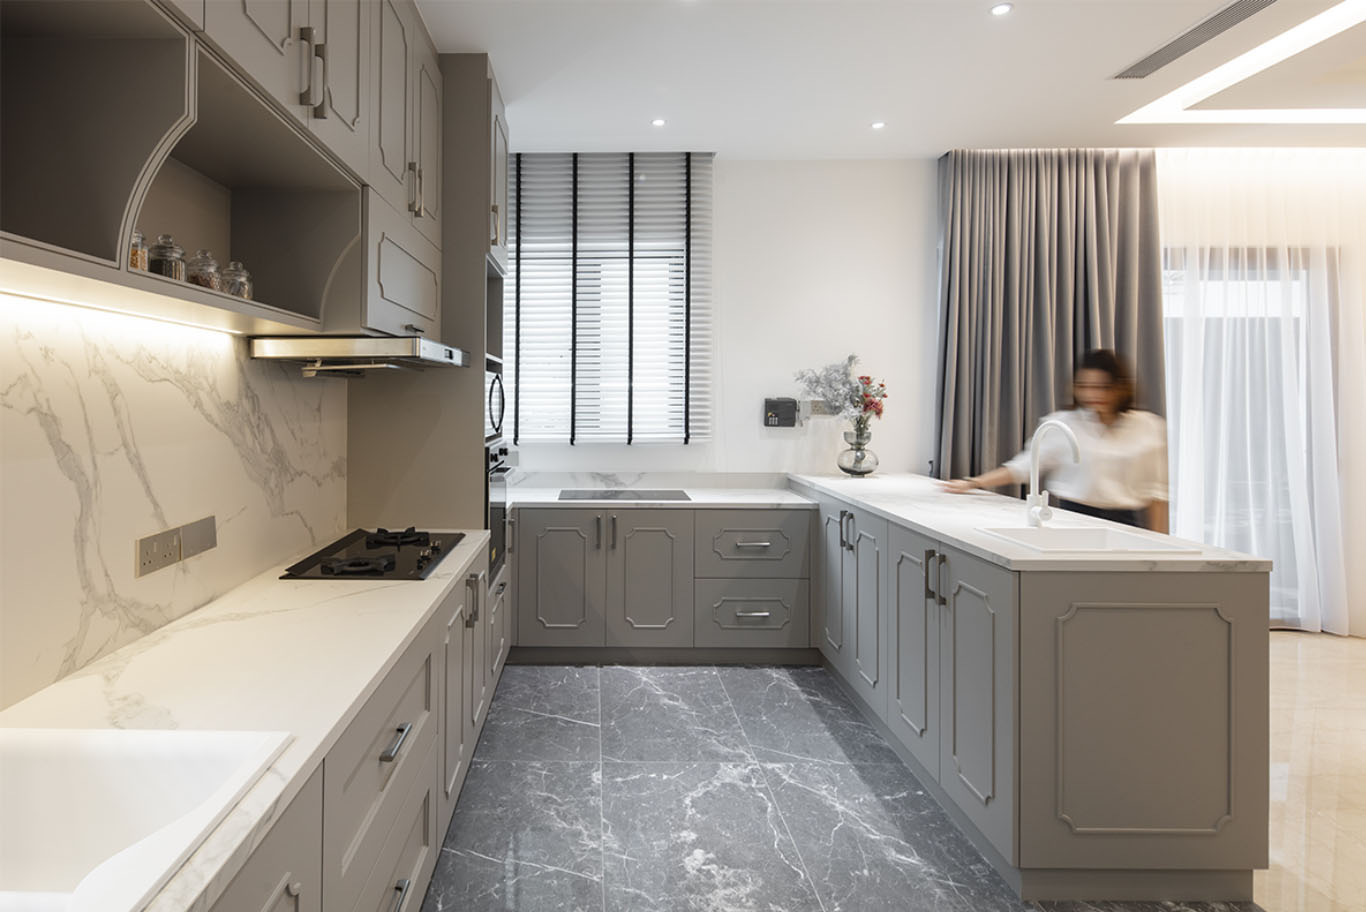 MIEUX The White Royale luxurious kitchen theme Mieux interior design